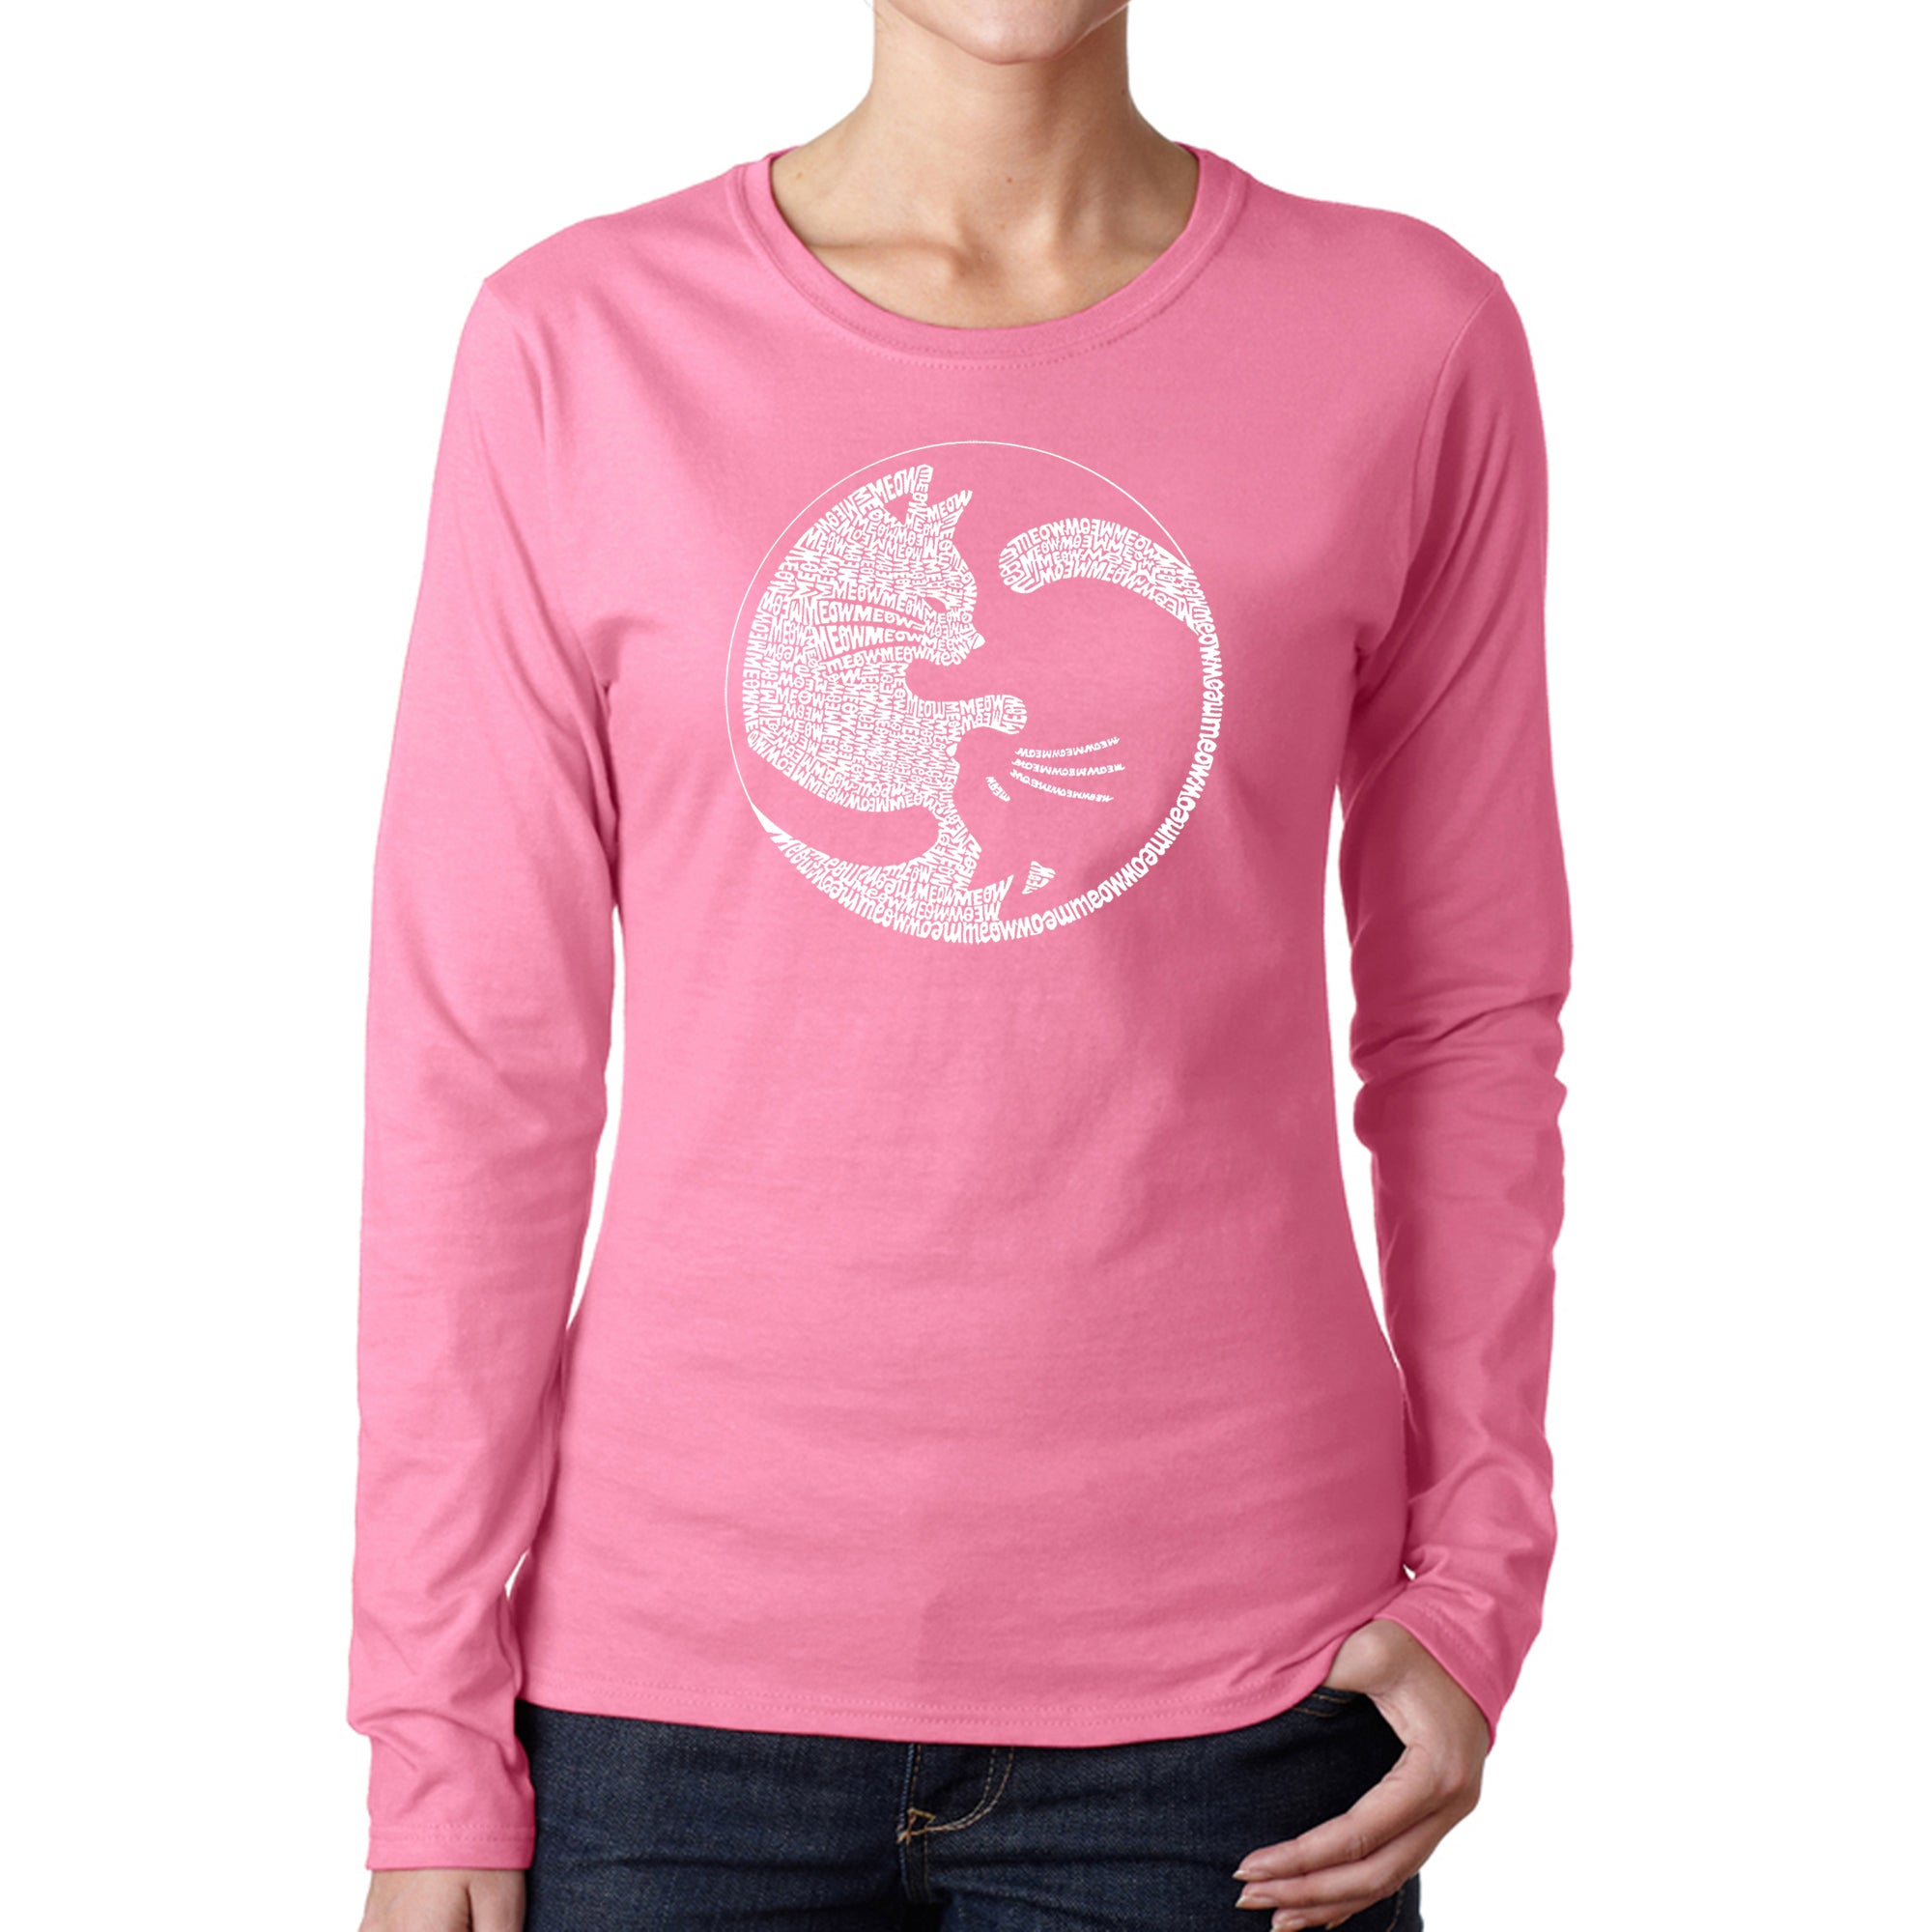 Yin Yang Cat - Women's Word Art Long Sleeve T-Shirt - Pink - Small